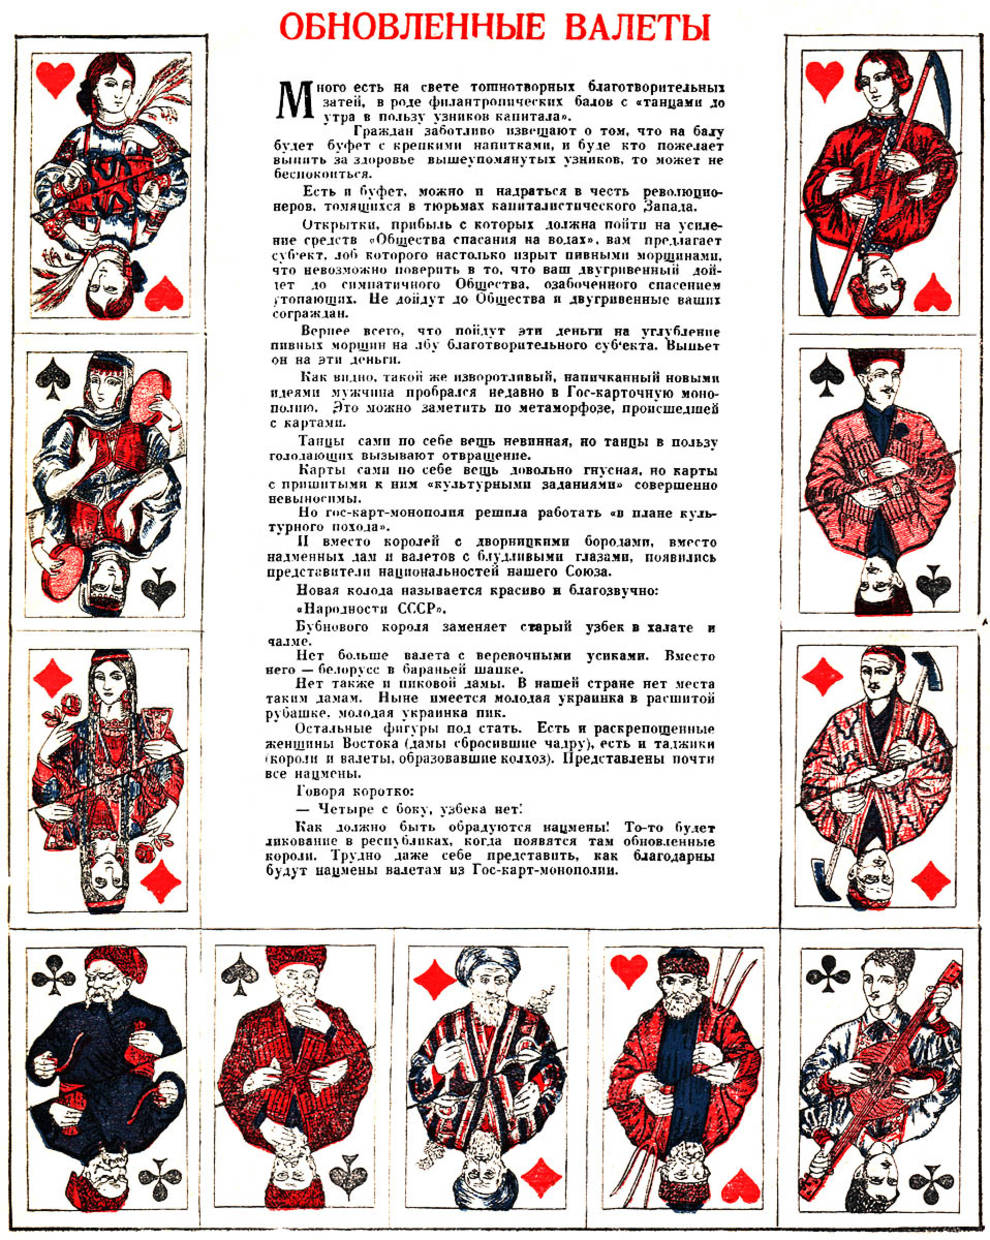 Как могли бы выглядеть советские игральные карты, если бы не один фельетон